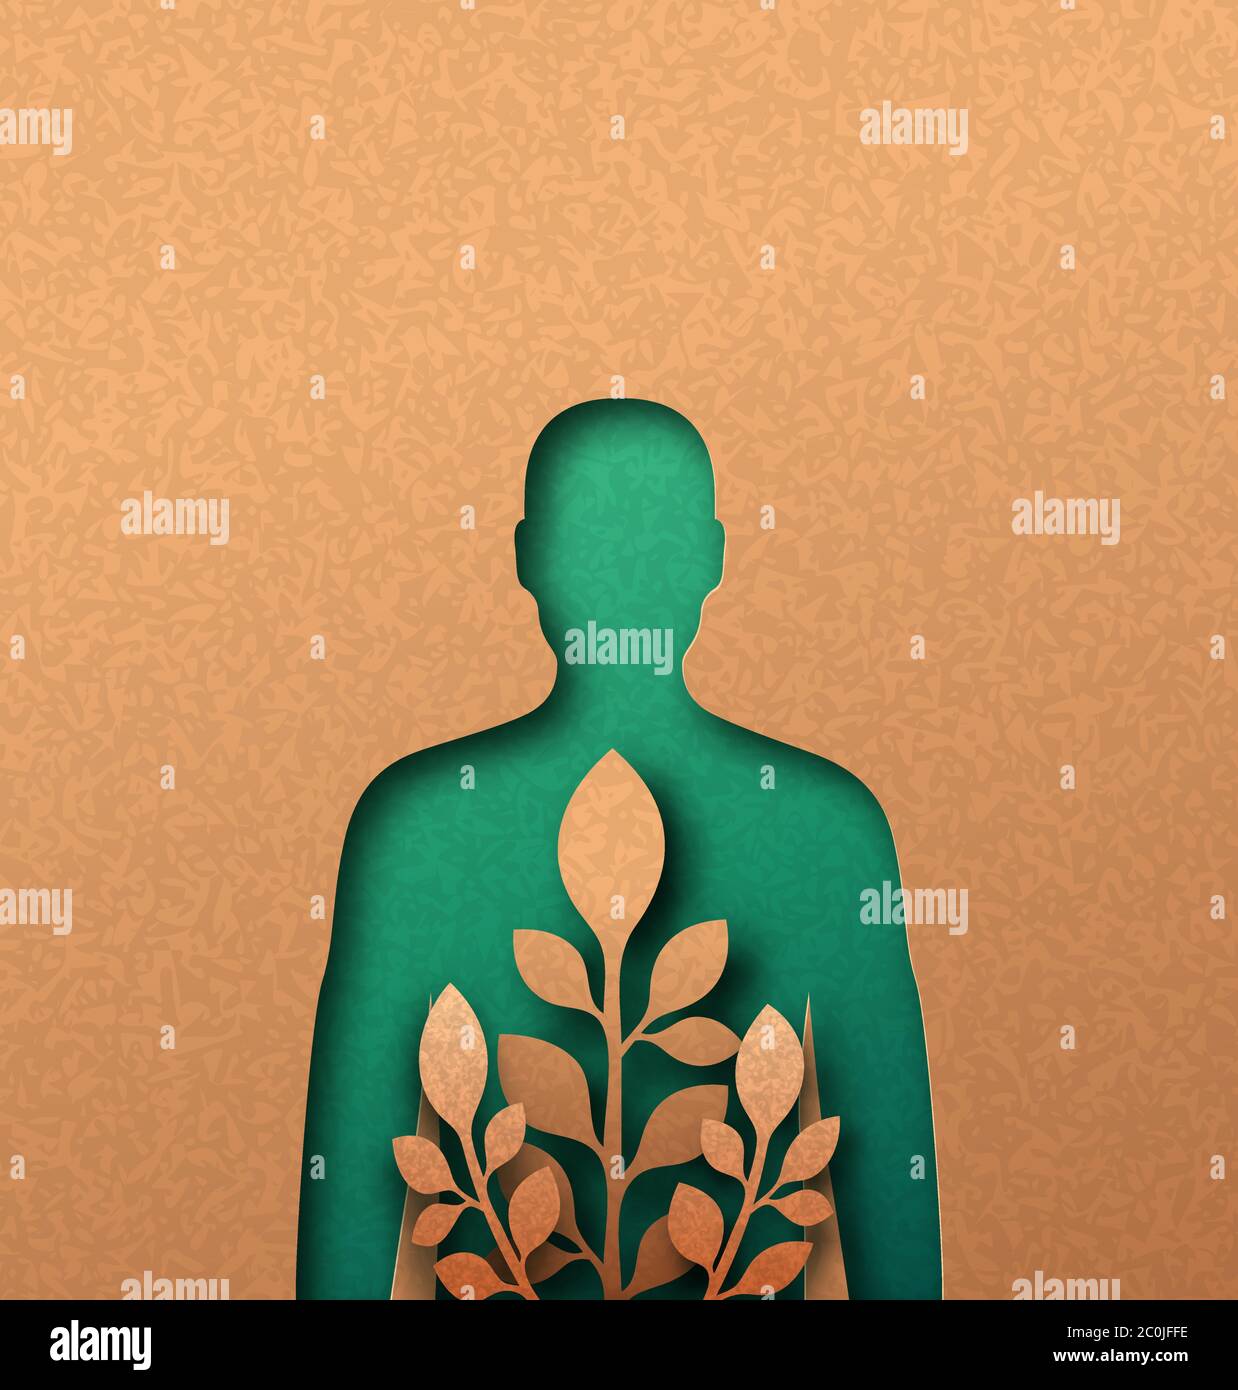 Uomo verde illustrazione papercut con foglia di pianta che cresce all'interno. Stile di vita delle persone eco-friendly, connessione alla natura o concetto di medicina naturale. cutou 3d Illustrazione Vettoriale